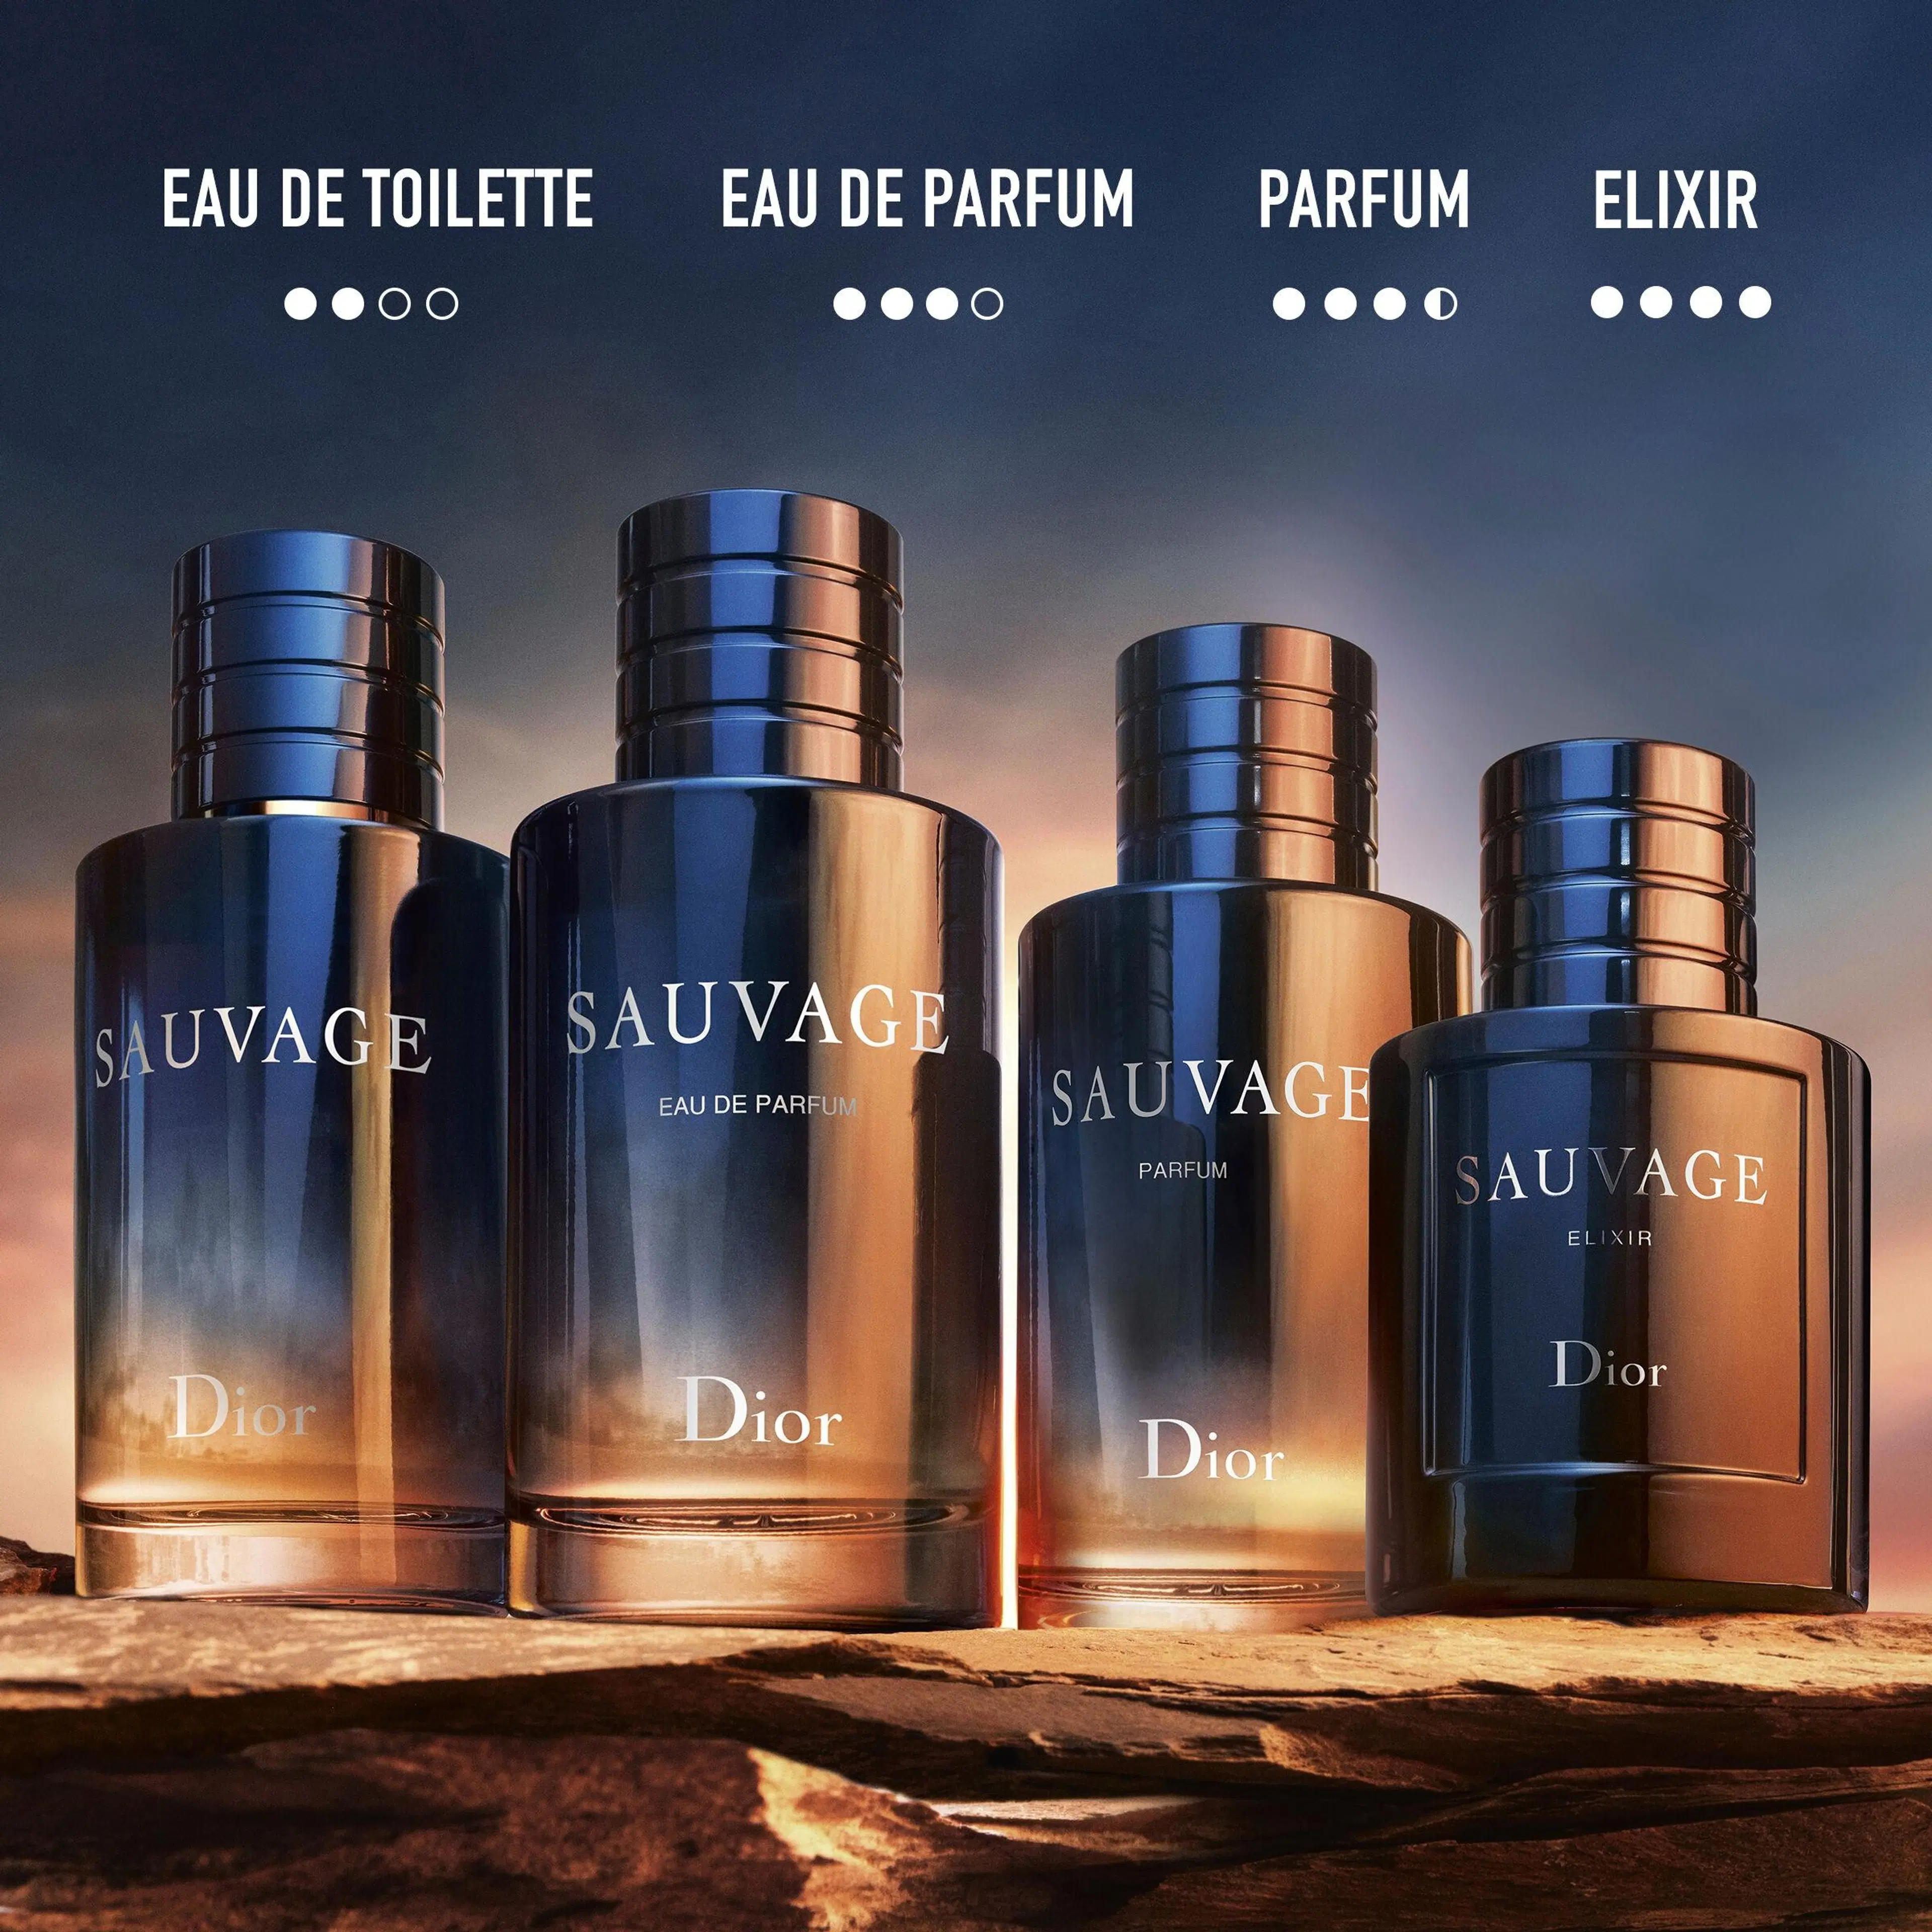 DIOR Sauvage Parfum tuoksu 60 ml